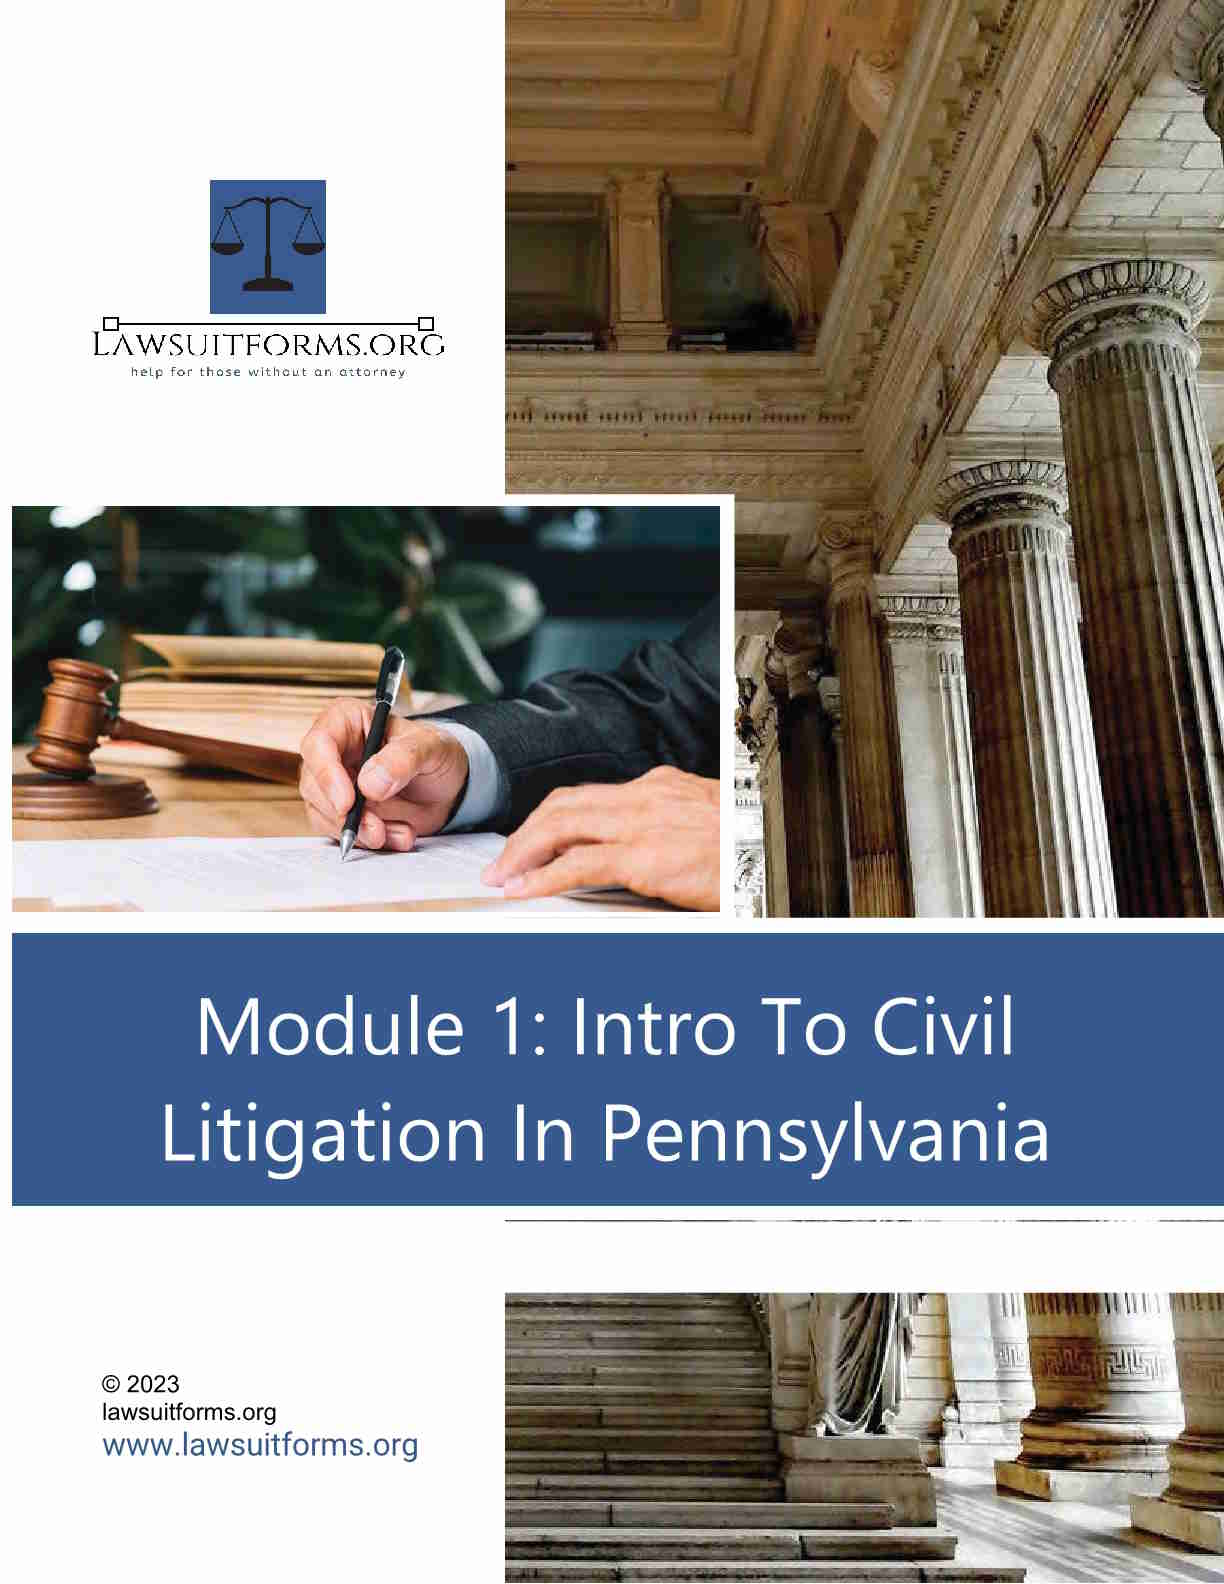 Intro to civil litigation in Pennsylvania